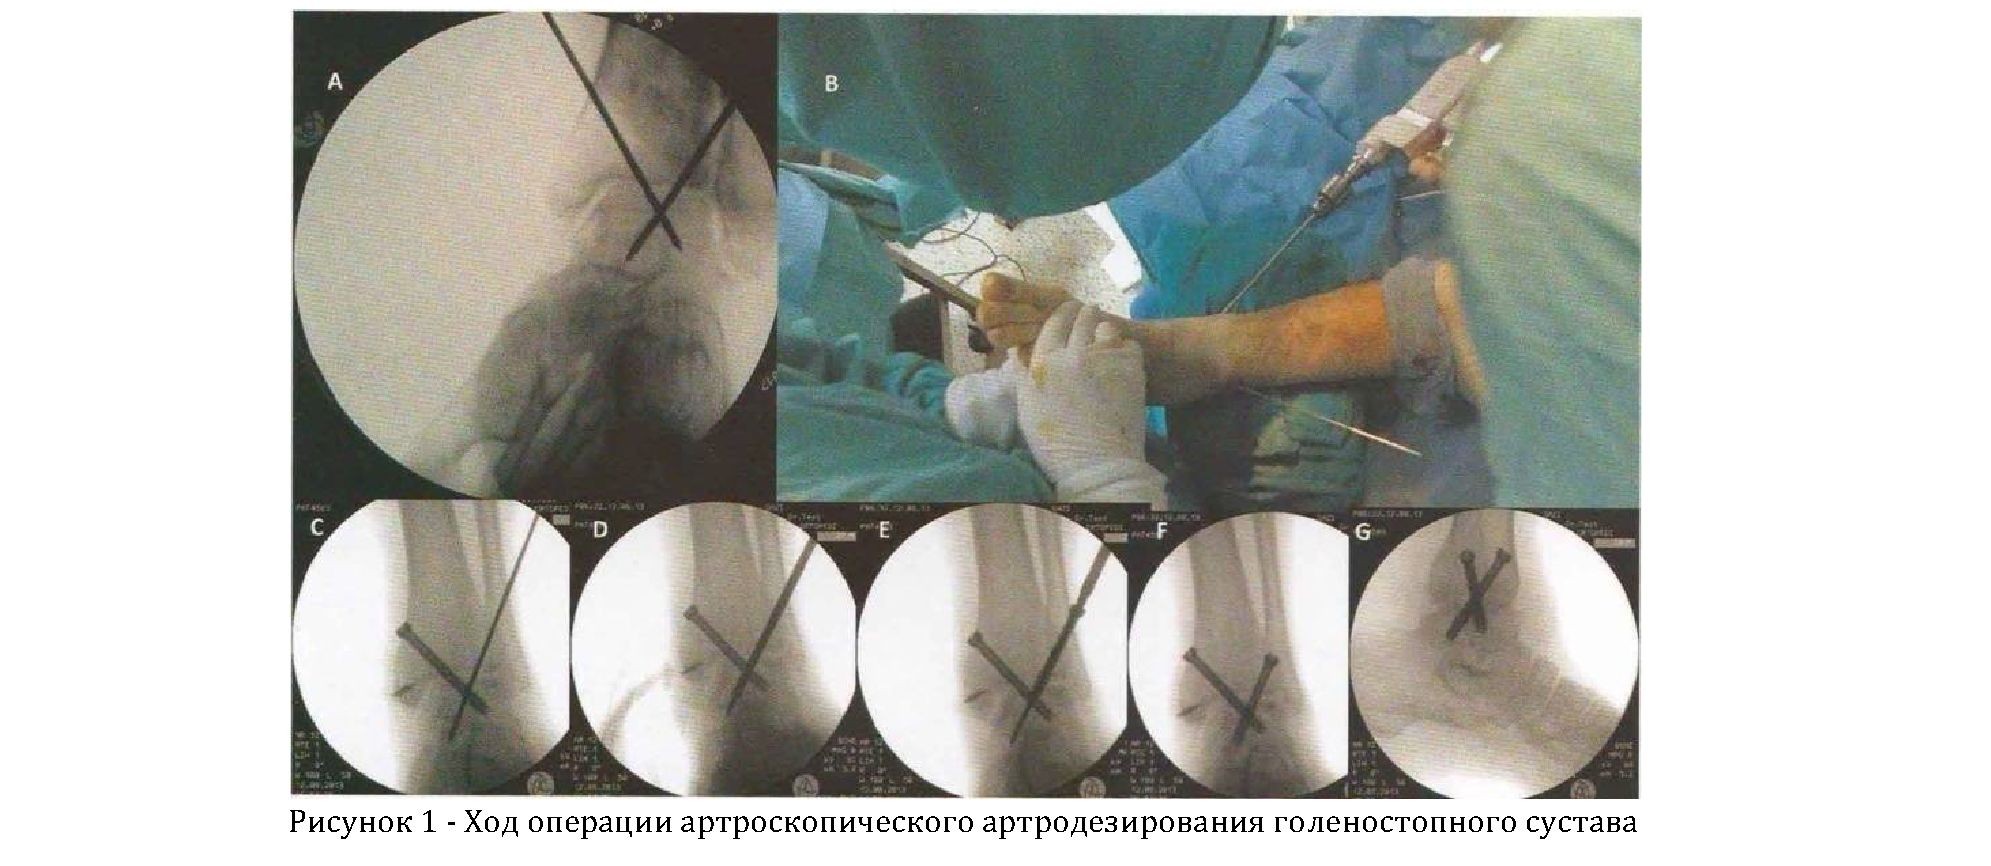 Артроскопическое артродезирование при дегенеративных заболеваниях голеностопного сустава